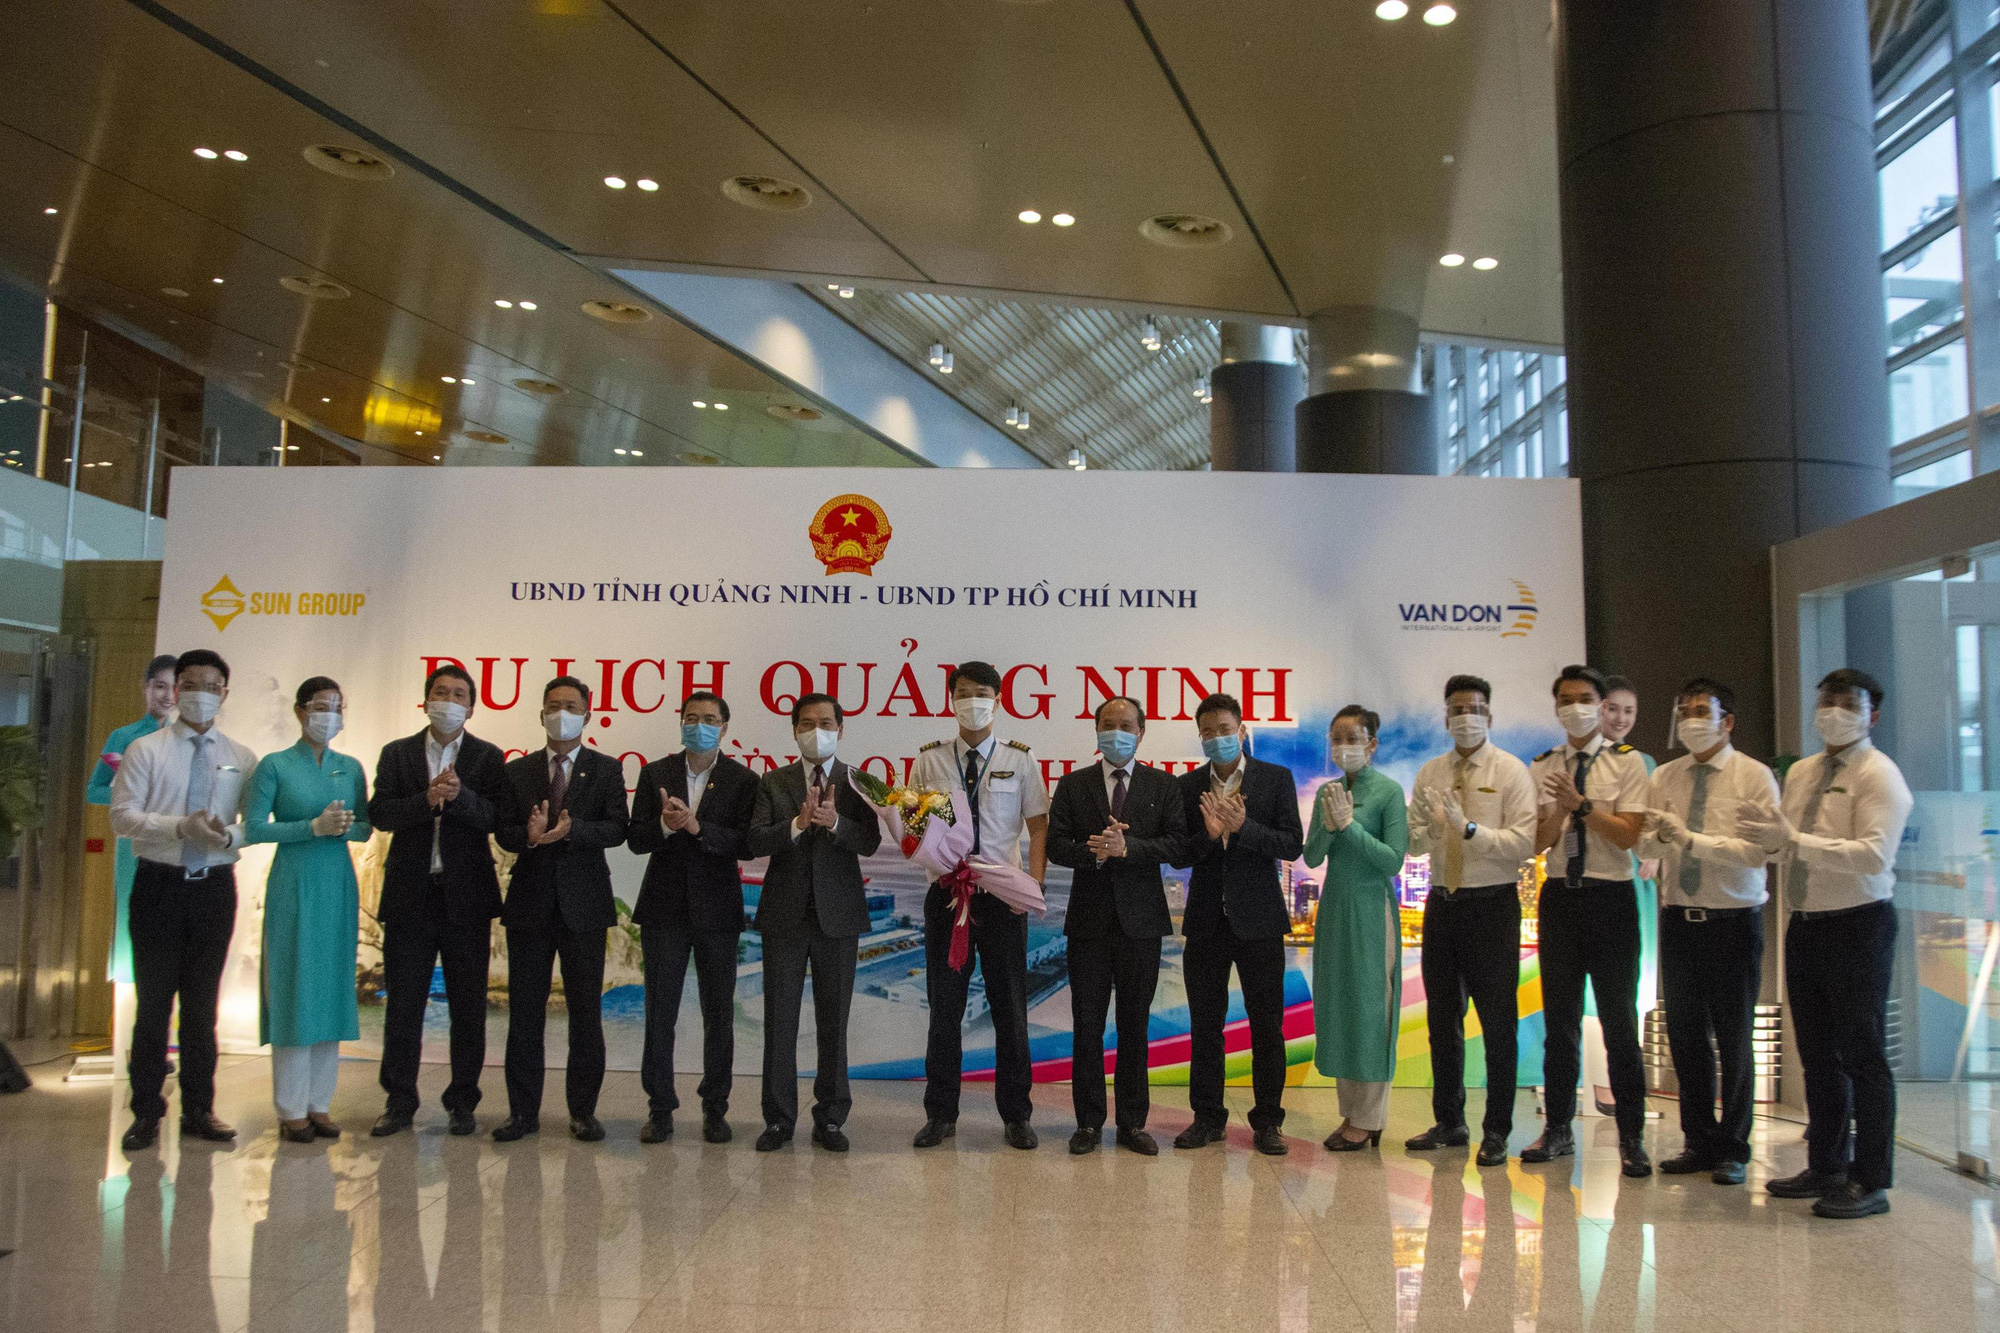 Nghi thức đặc biệt đón chào những hành khách đầu tiên từ TP HCM tới sân bay Vân Đồn - Ảnh 9.